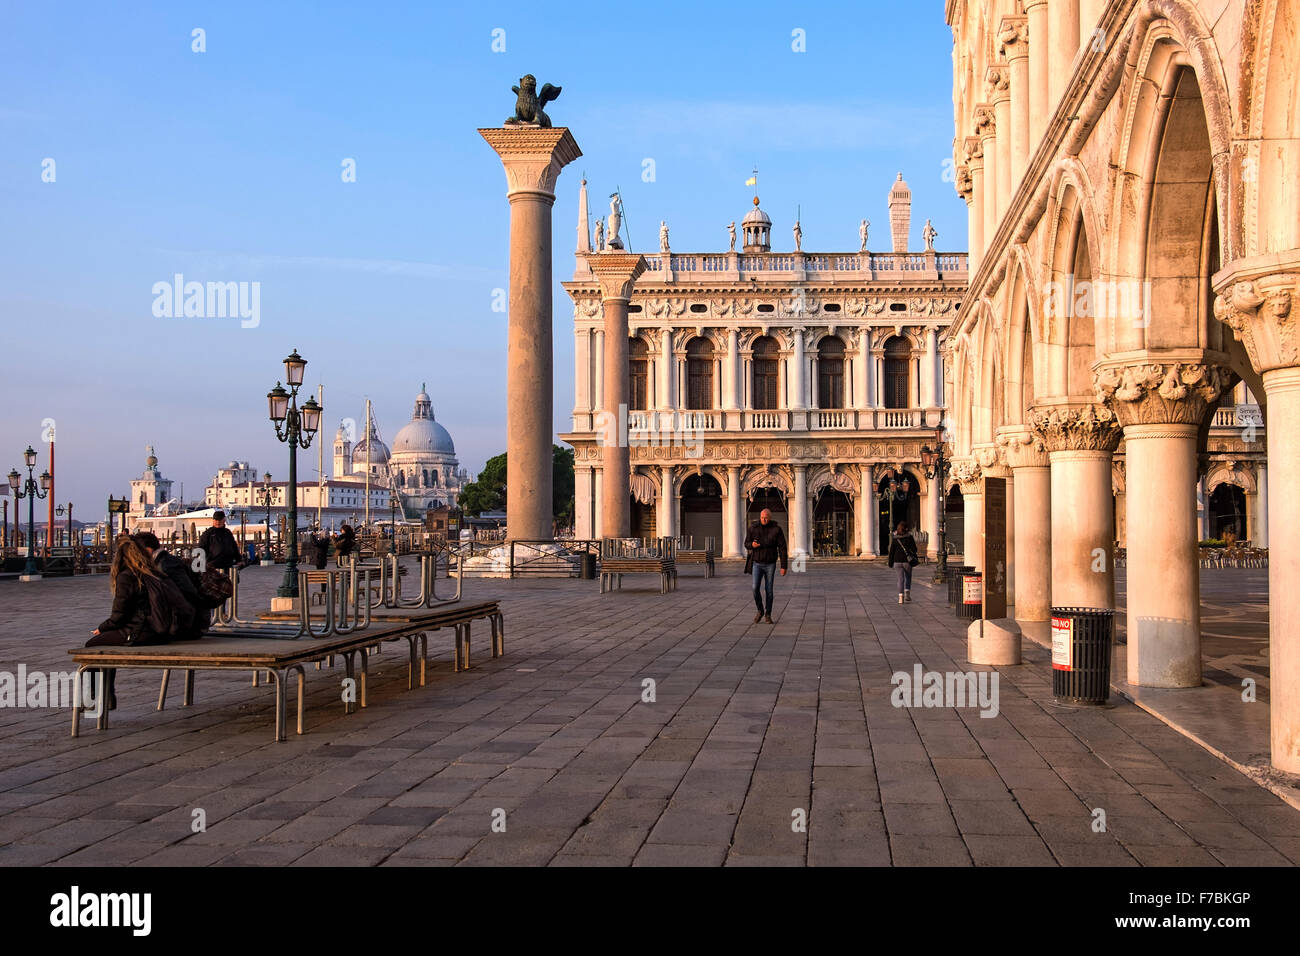 Venecia, Italia - Libreria Marciana, el Palazzo Ducale, las columnas de San Marco y San Teodoro y la Basílica di Santa Maria della Salute Foto de stock